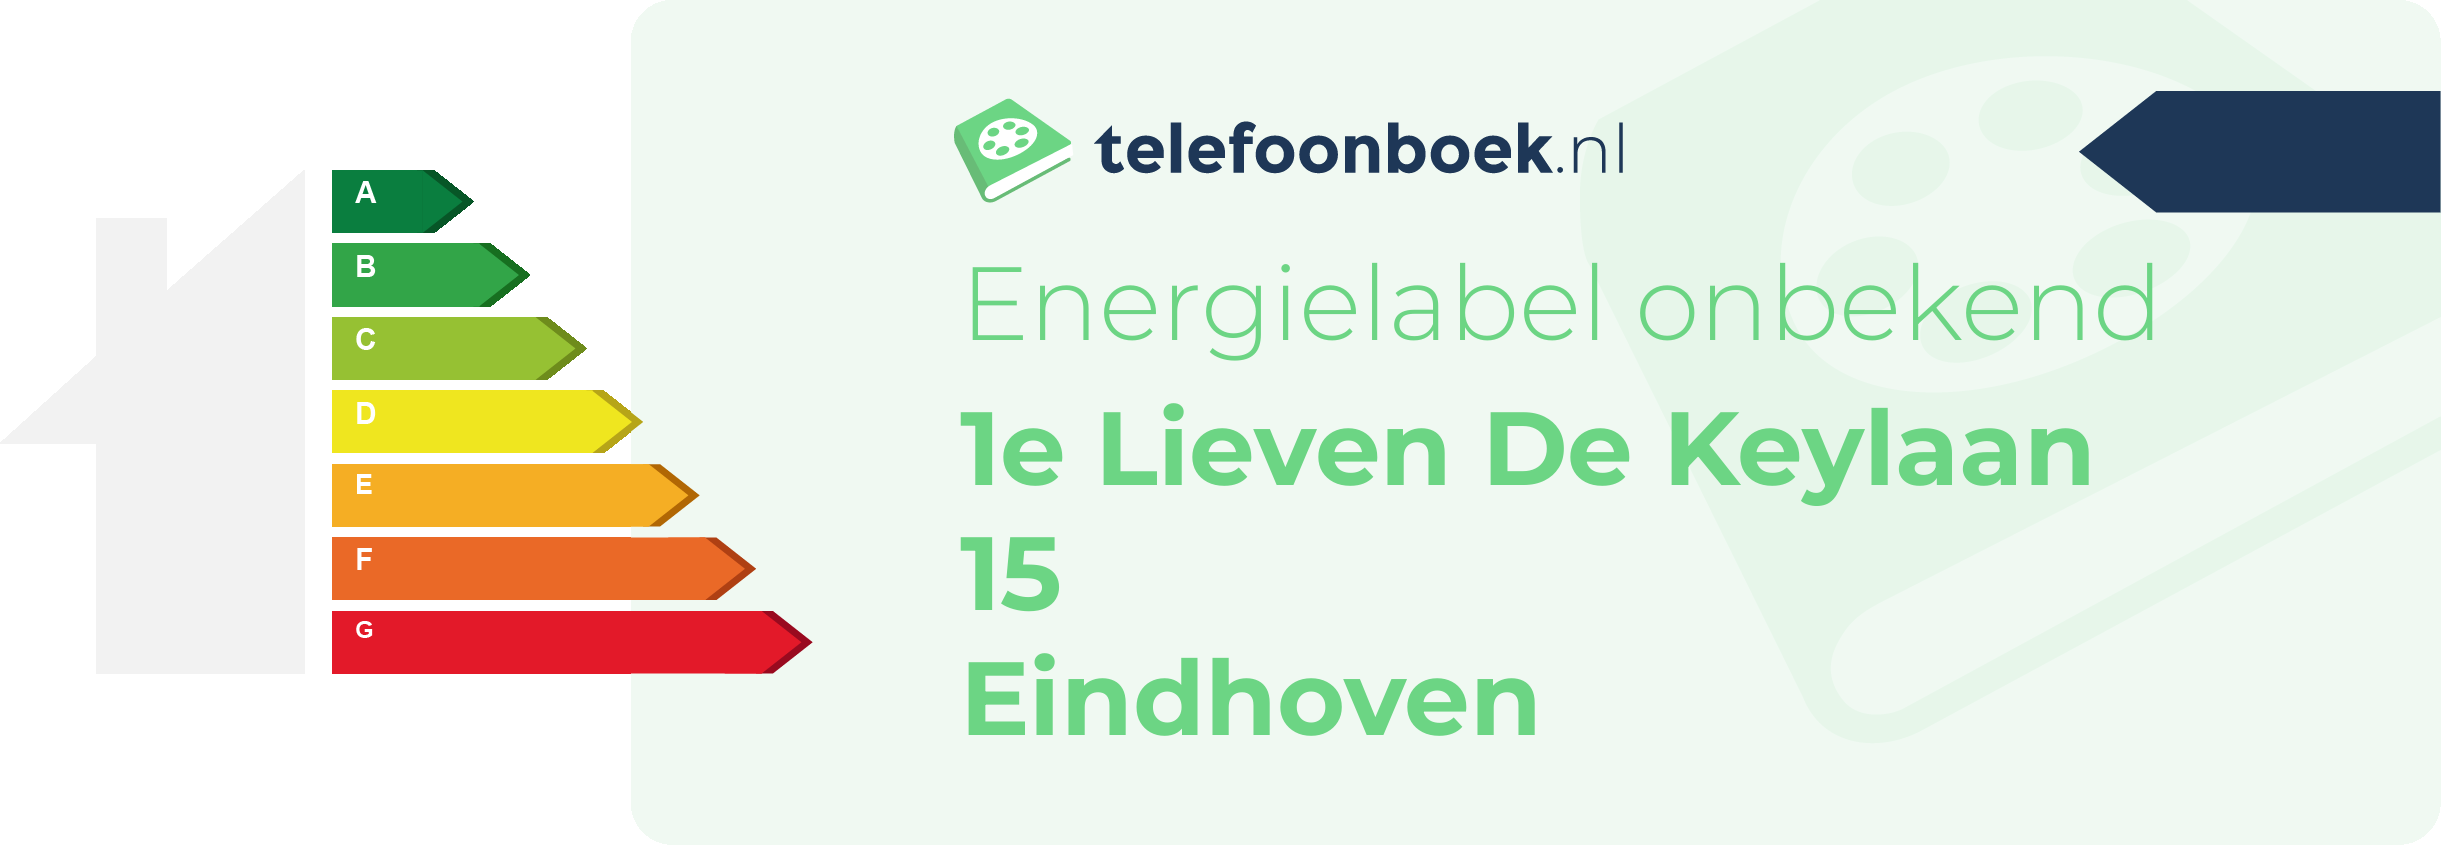 Energielabel 1e Lieven De Keylaan 15 Eindhoven